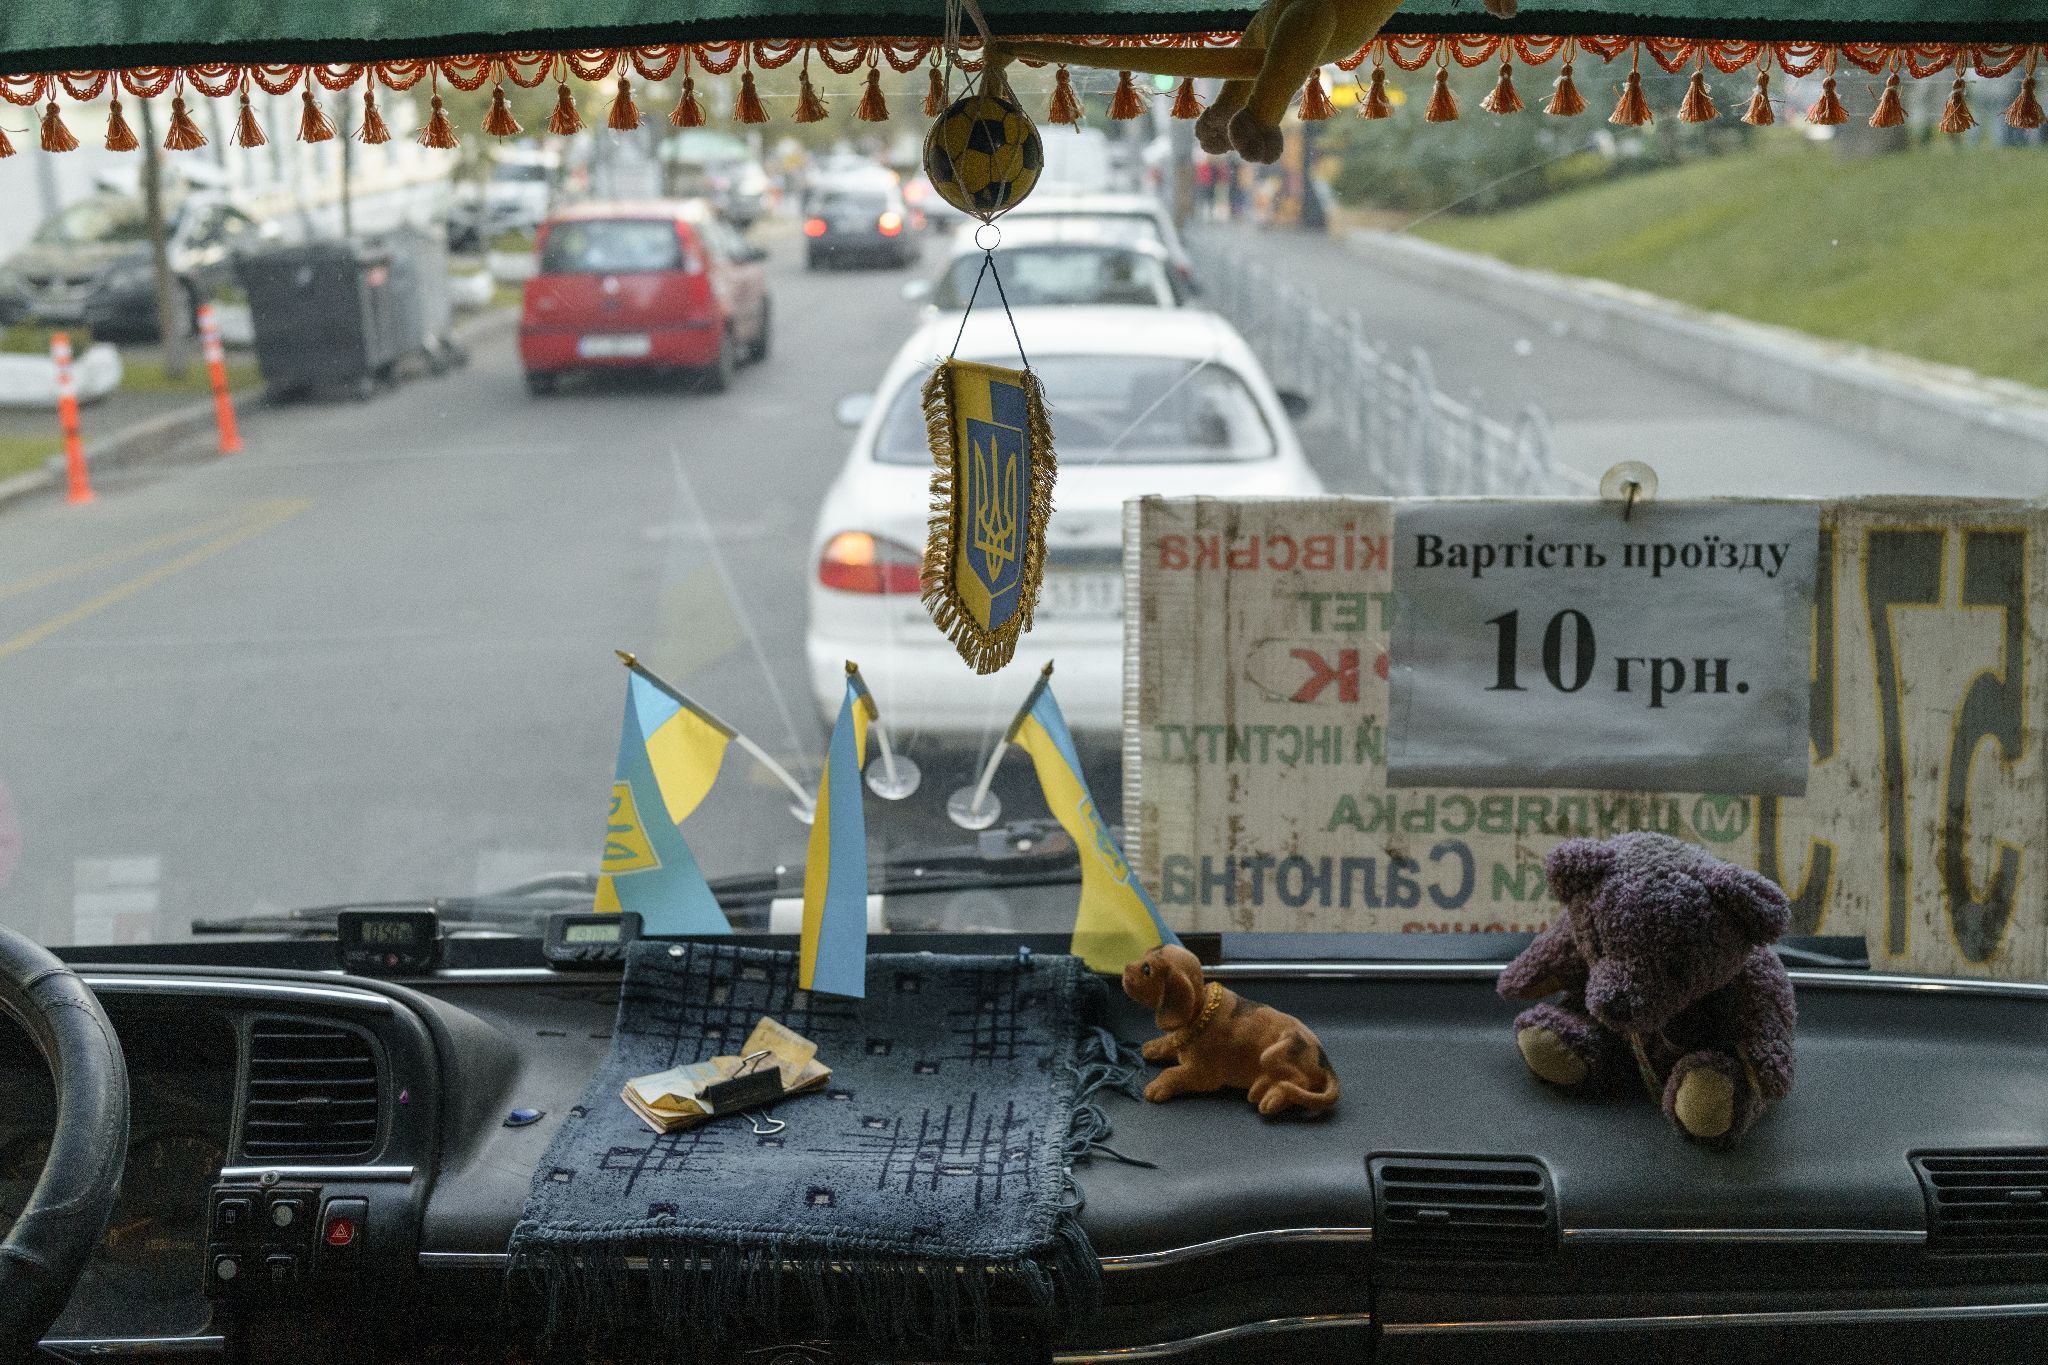 Декор в киевских автобусах, Киев, октябрь 2021 года. Фото: Дмитрий Пруткин